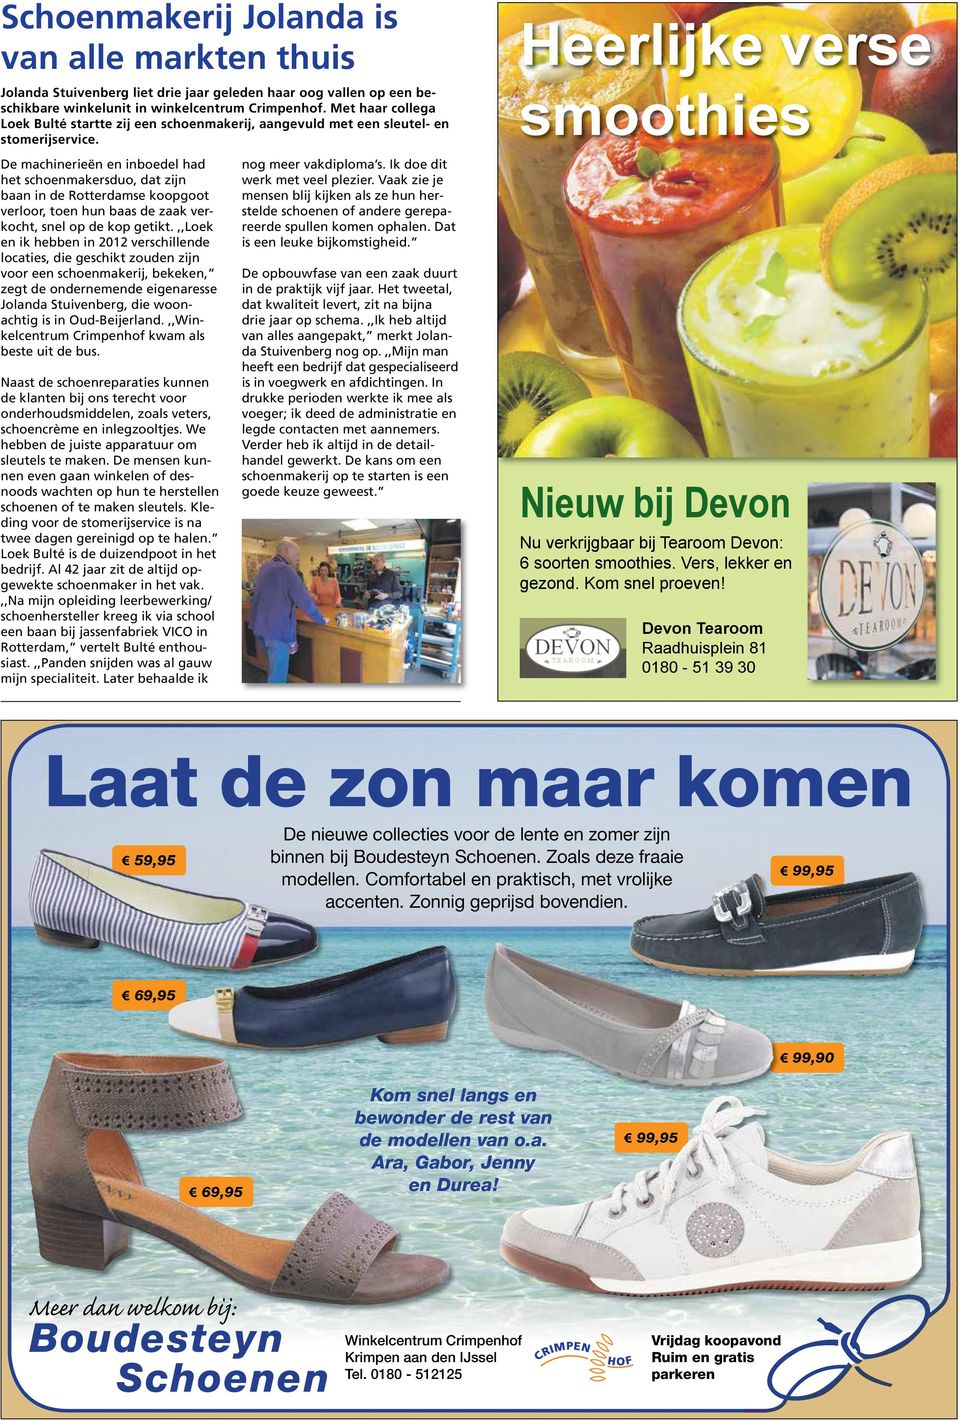 De machinerieën en inboedel had het schoenmakersduo, dat zijn baan in de Rotterdamse koopgoot verloor, toen hun baas de zaak verkocht, snel op de kop getikt.